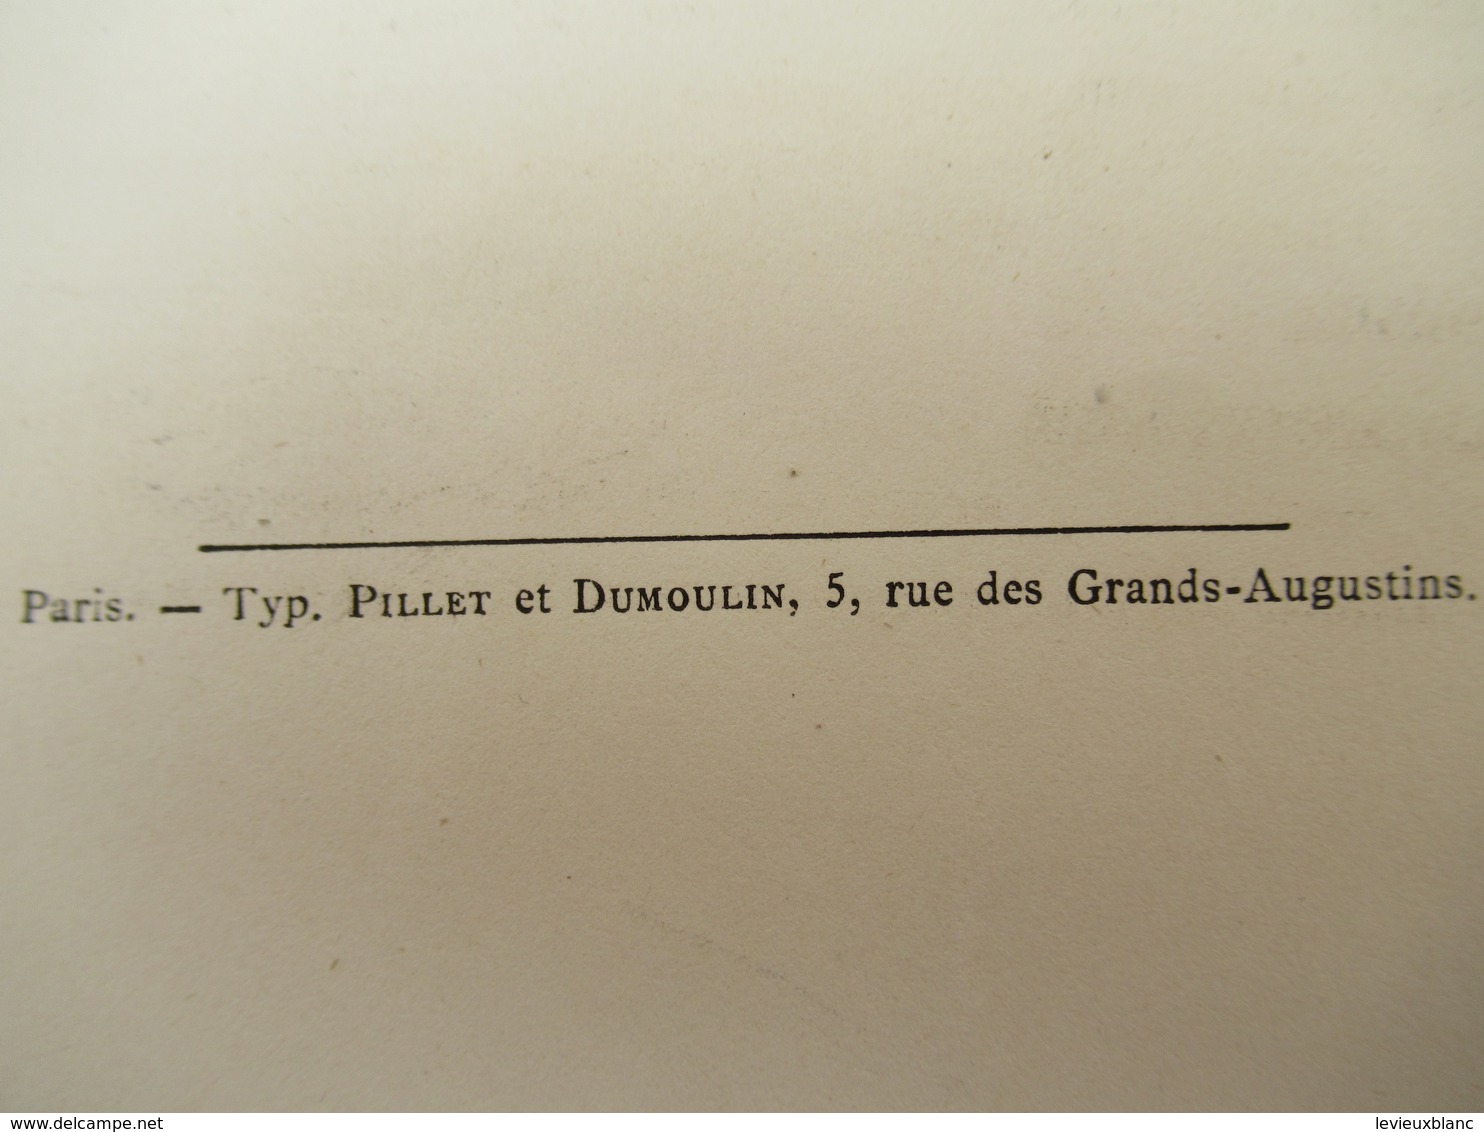 Grde plaquette/Catalogue de Plantes Rares/ Palais de San Donato/ITALIE/Vente aux enchères/Florence/LUBBERS/1879   MDP100